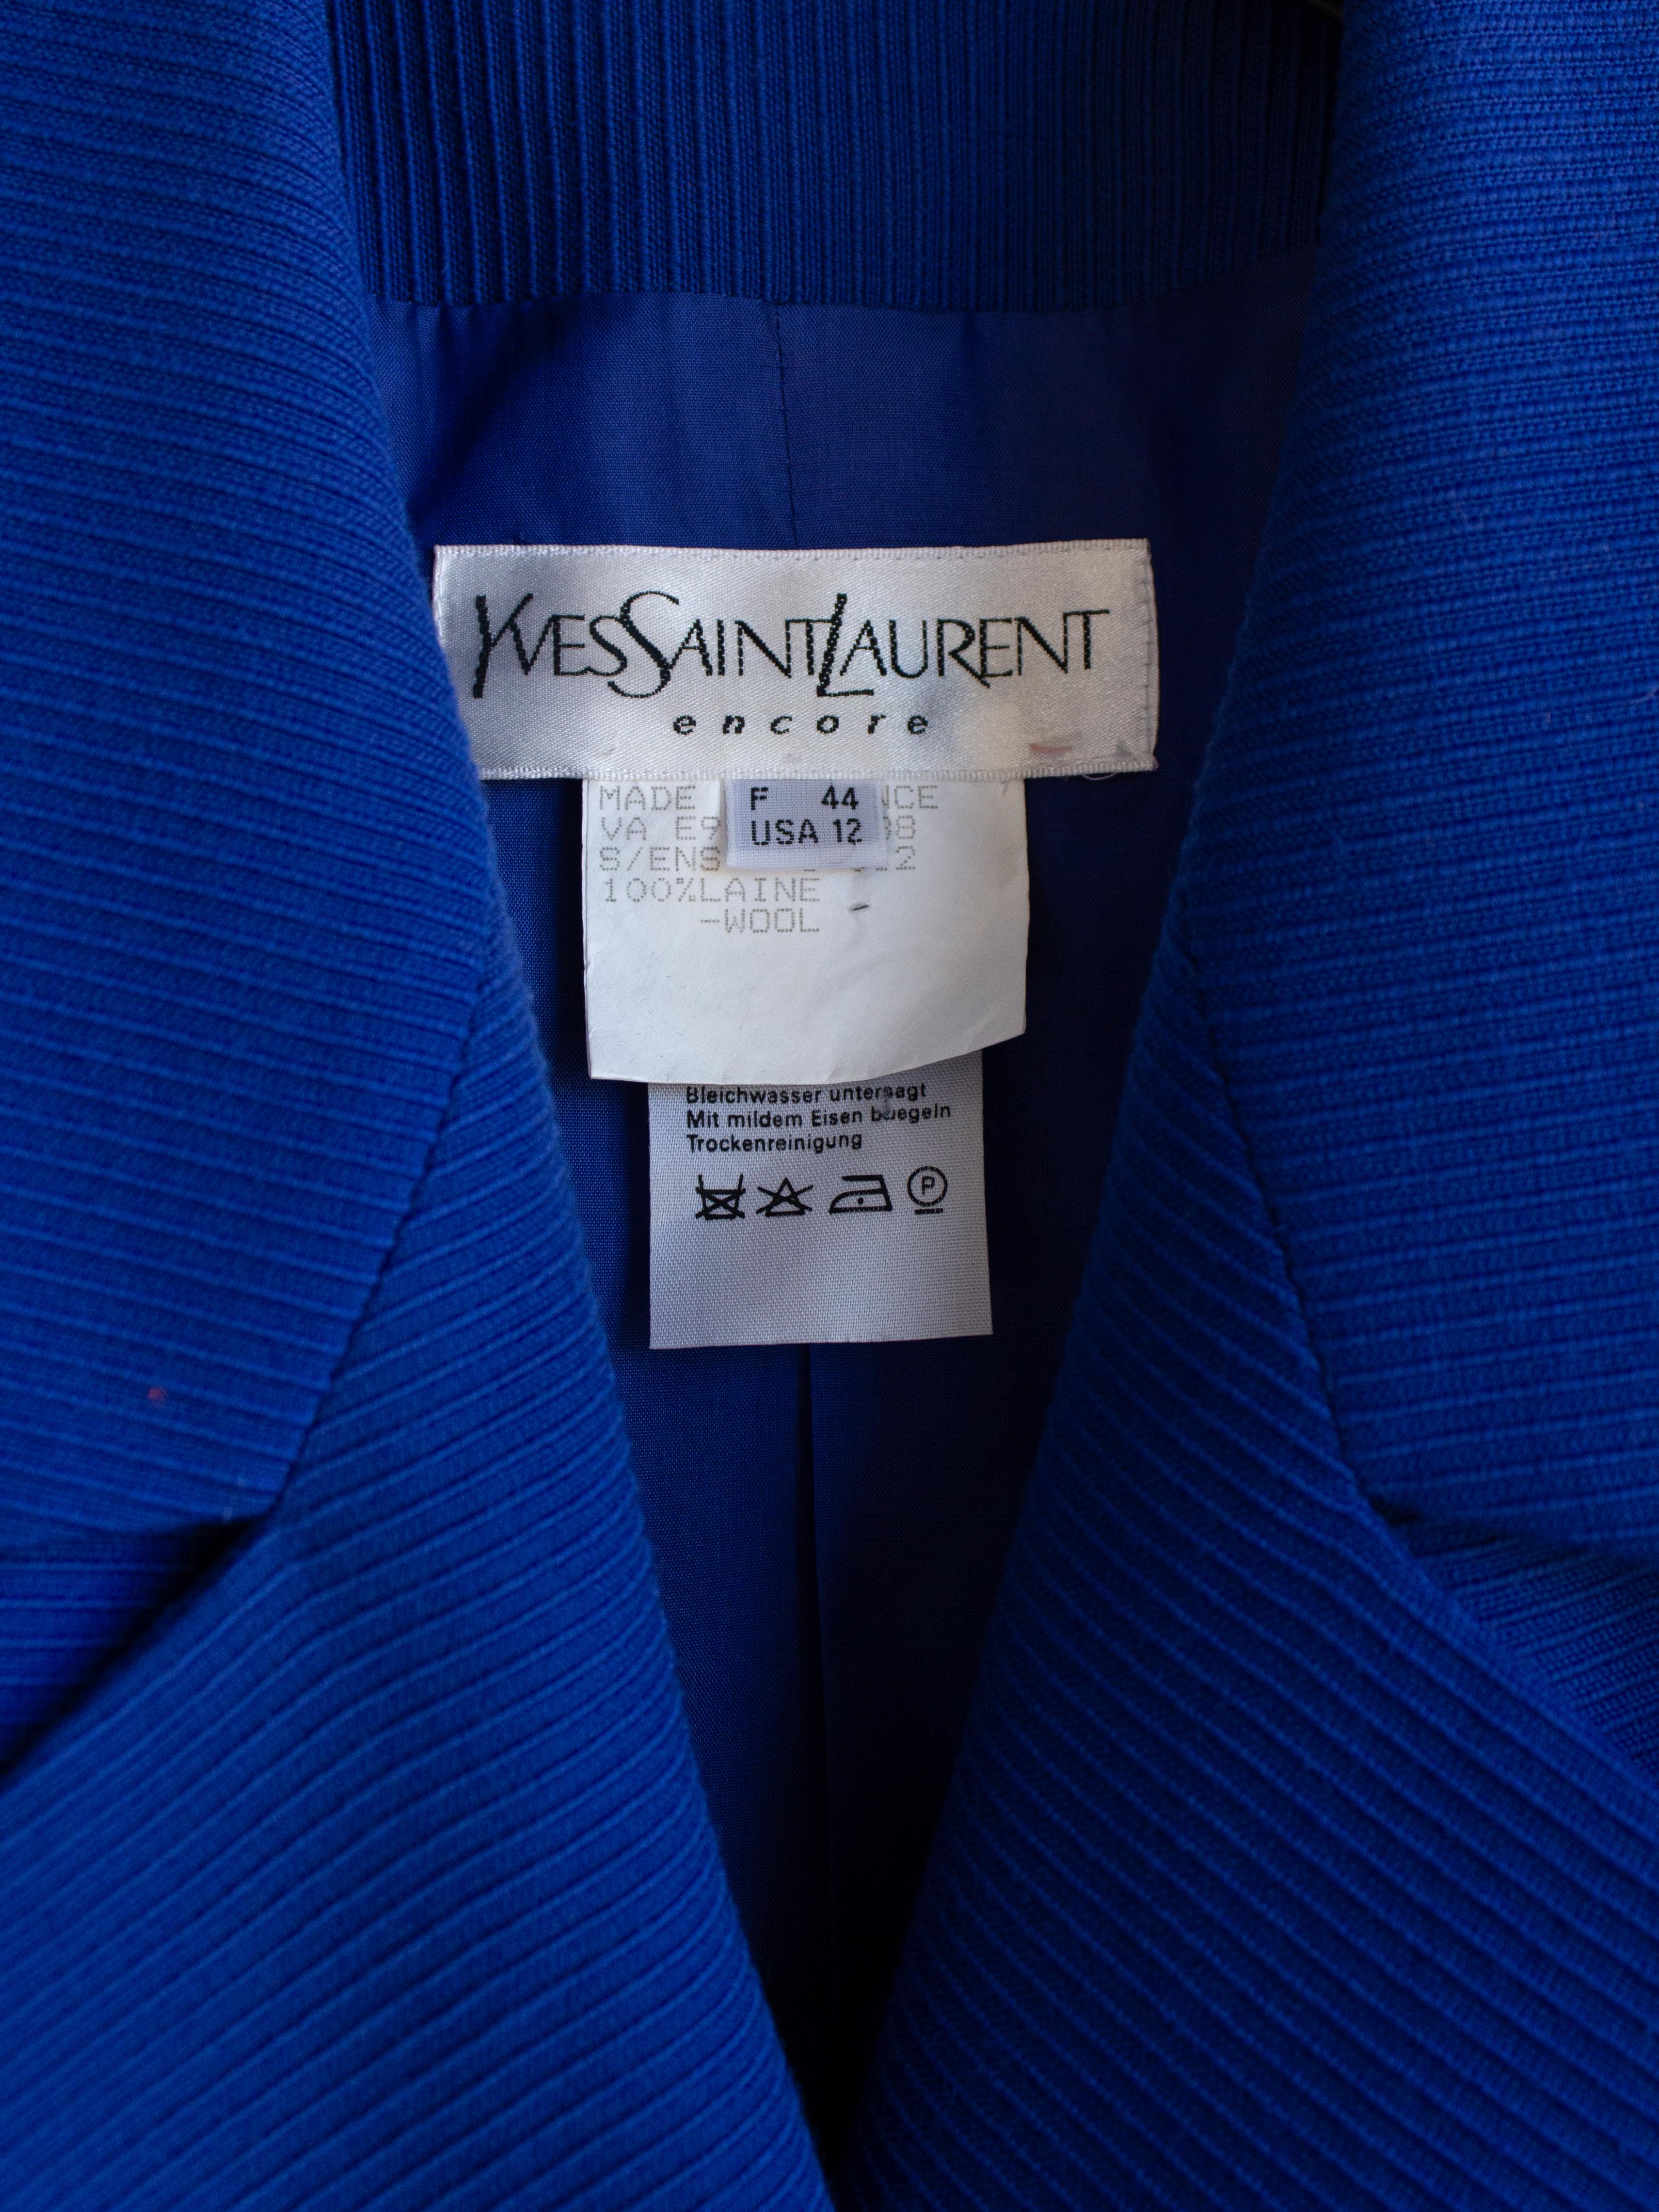 Yves Saint Laurent Encore Vintage S/S 1995 Royal Blue Gold Hearts Jacket Suit For Sale 3